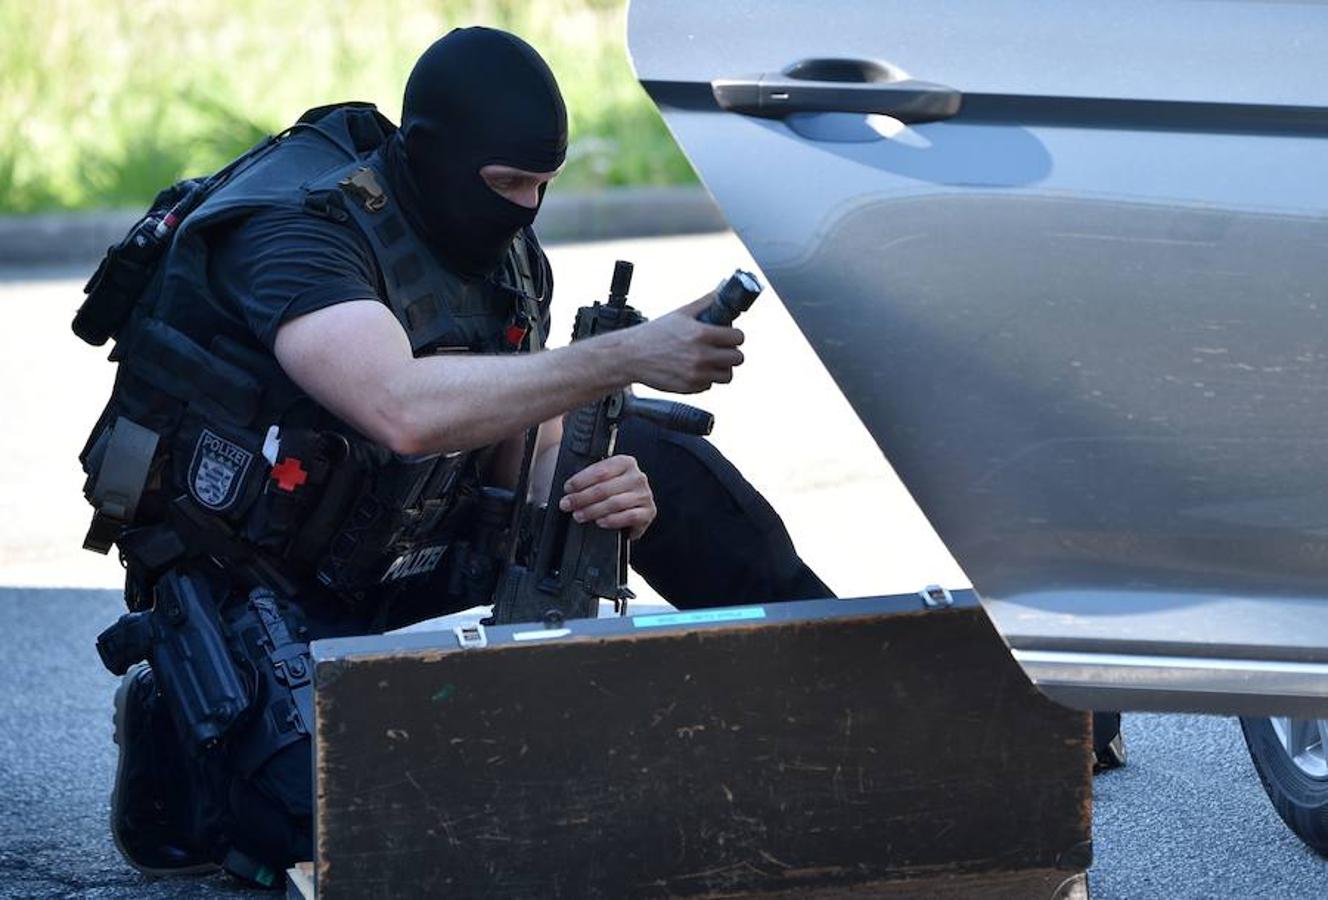 Según las autoridades locales, el asaltante parecía ser un hombre «trastornado» y fuentes de seguridad descartan que tuviera vínculos terroristas. AFP